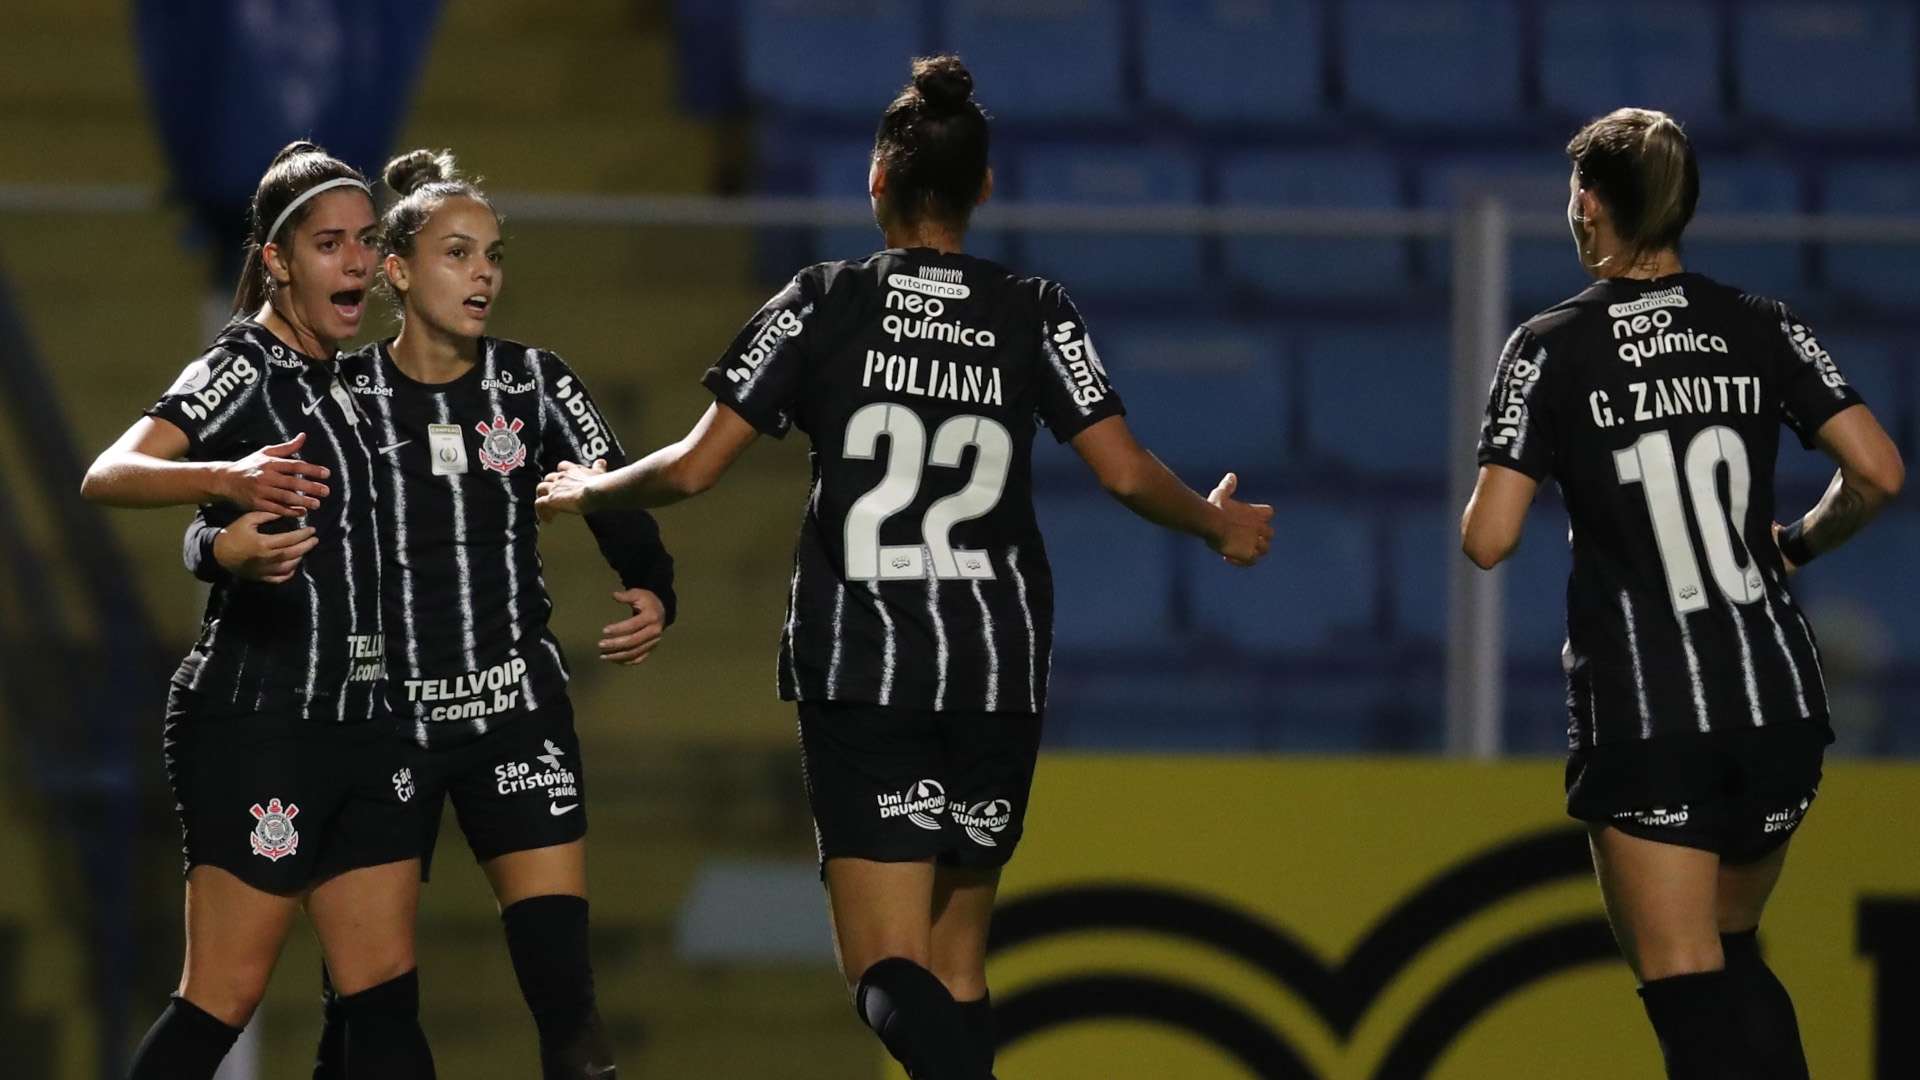 Jogadoras comemoram gol, Avaí/Kindermann x Corinthians, quartas Brasileirão feminino 2021